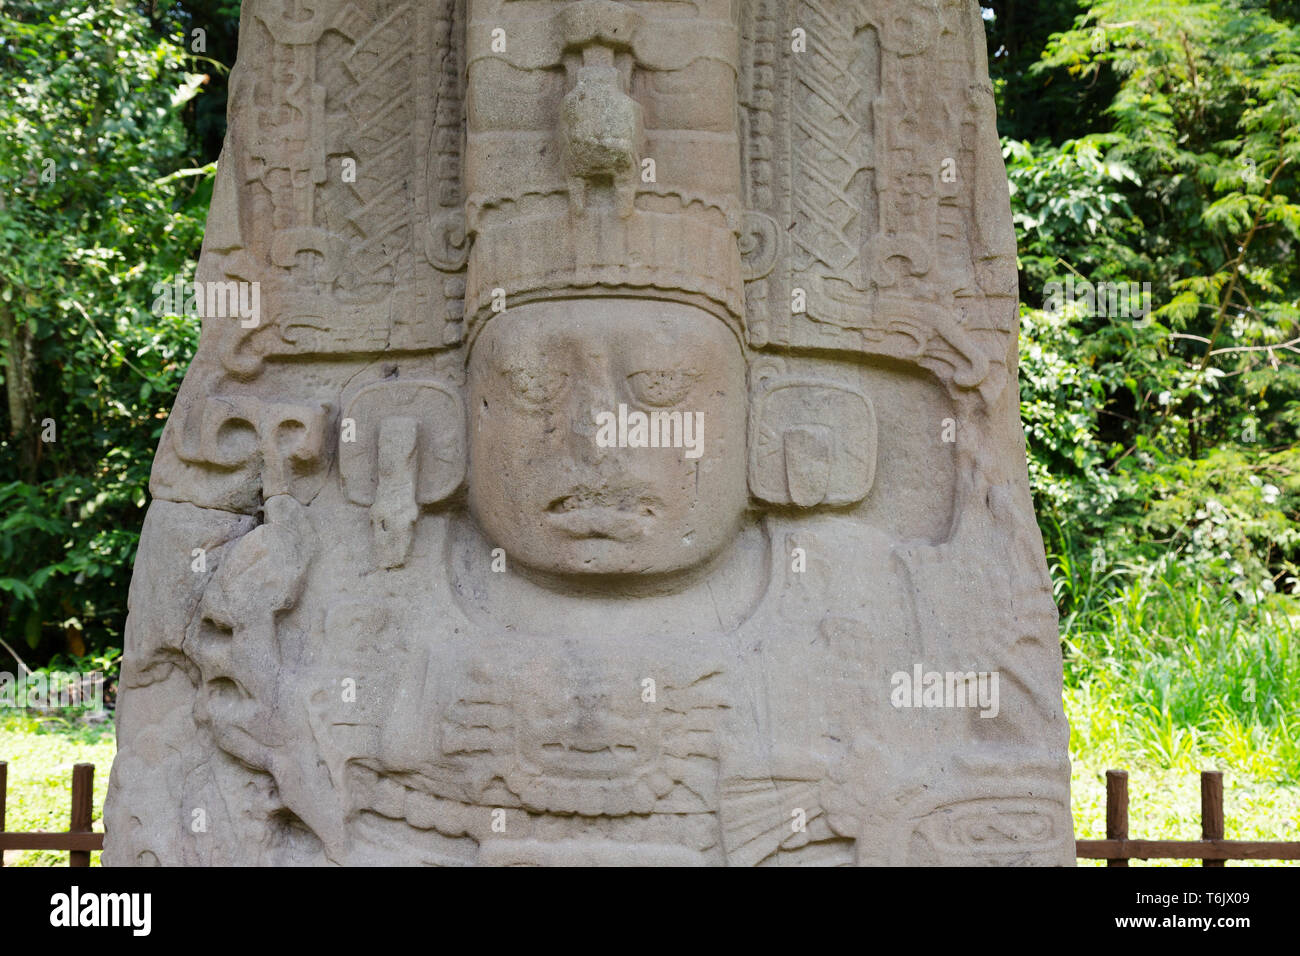 Les ruines mayas - Comité permanent K stèle en pierre érigée par règle Ciel-jade Au ixe siècle ; Quirigua UNESCO World Heritage site, Guatemala Amérique Latine Banque D'Images